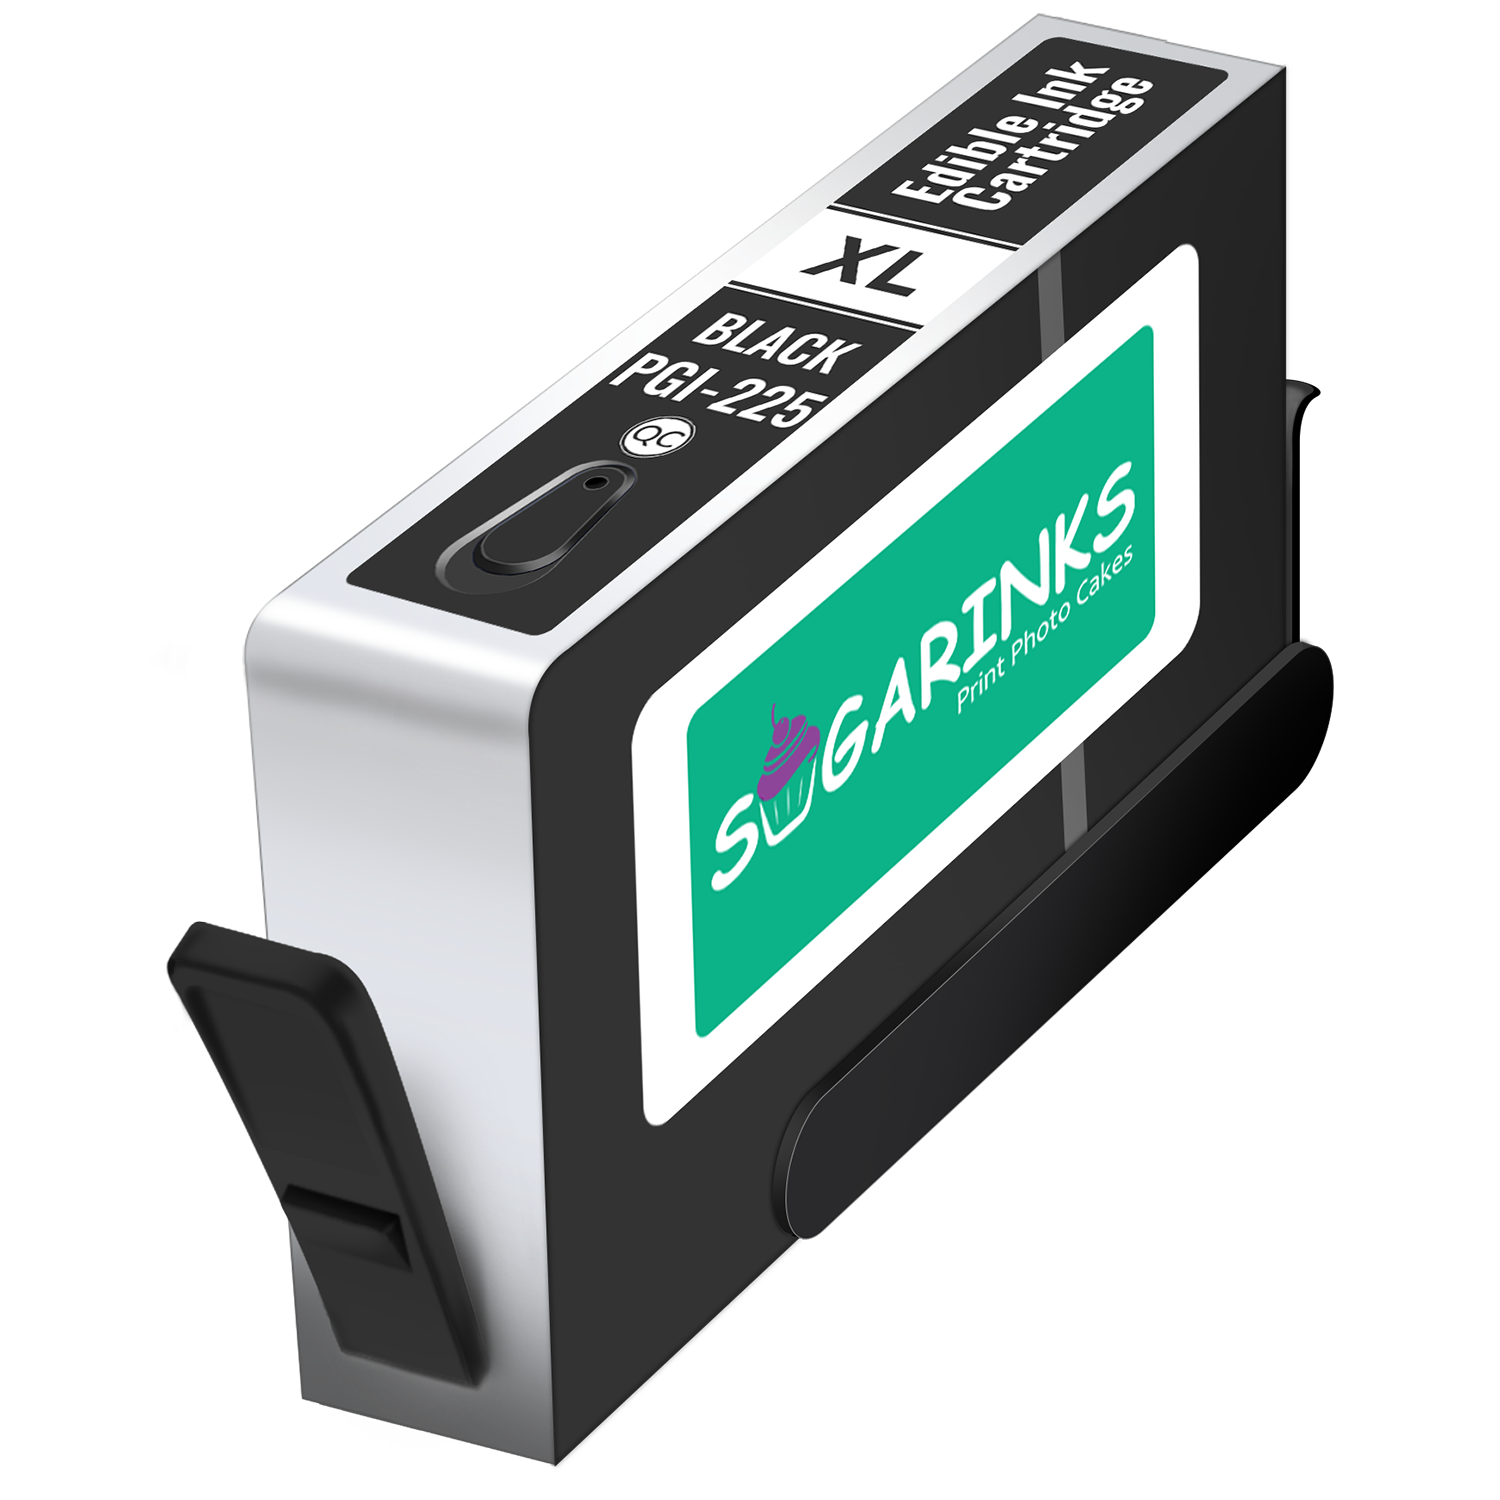 Sugarinks Edible Ink Cartridge PGI-225BK for Canon Edible Printers – Black